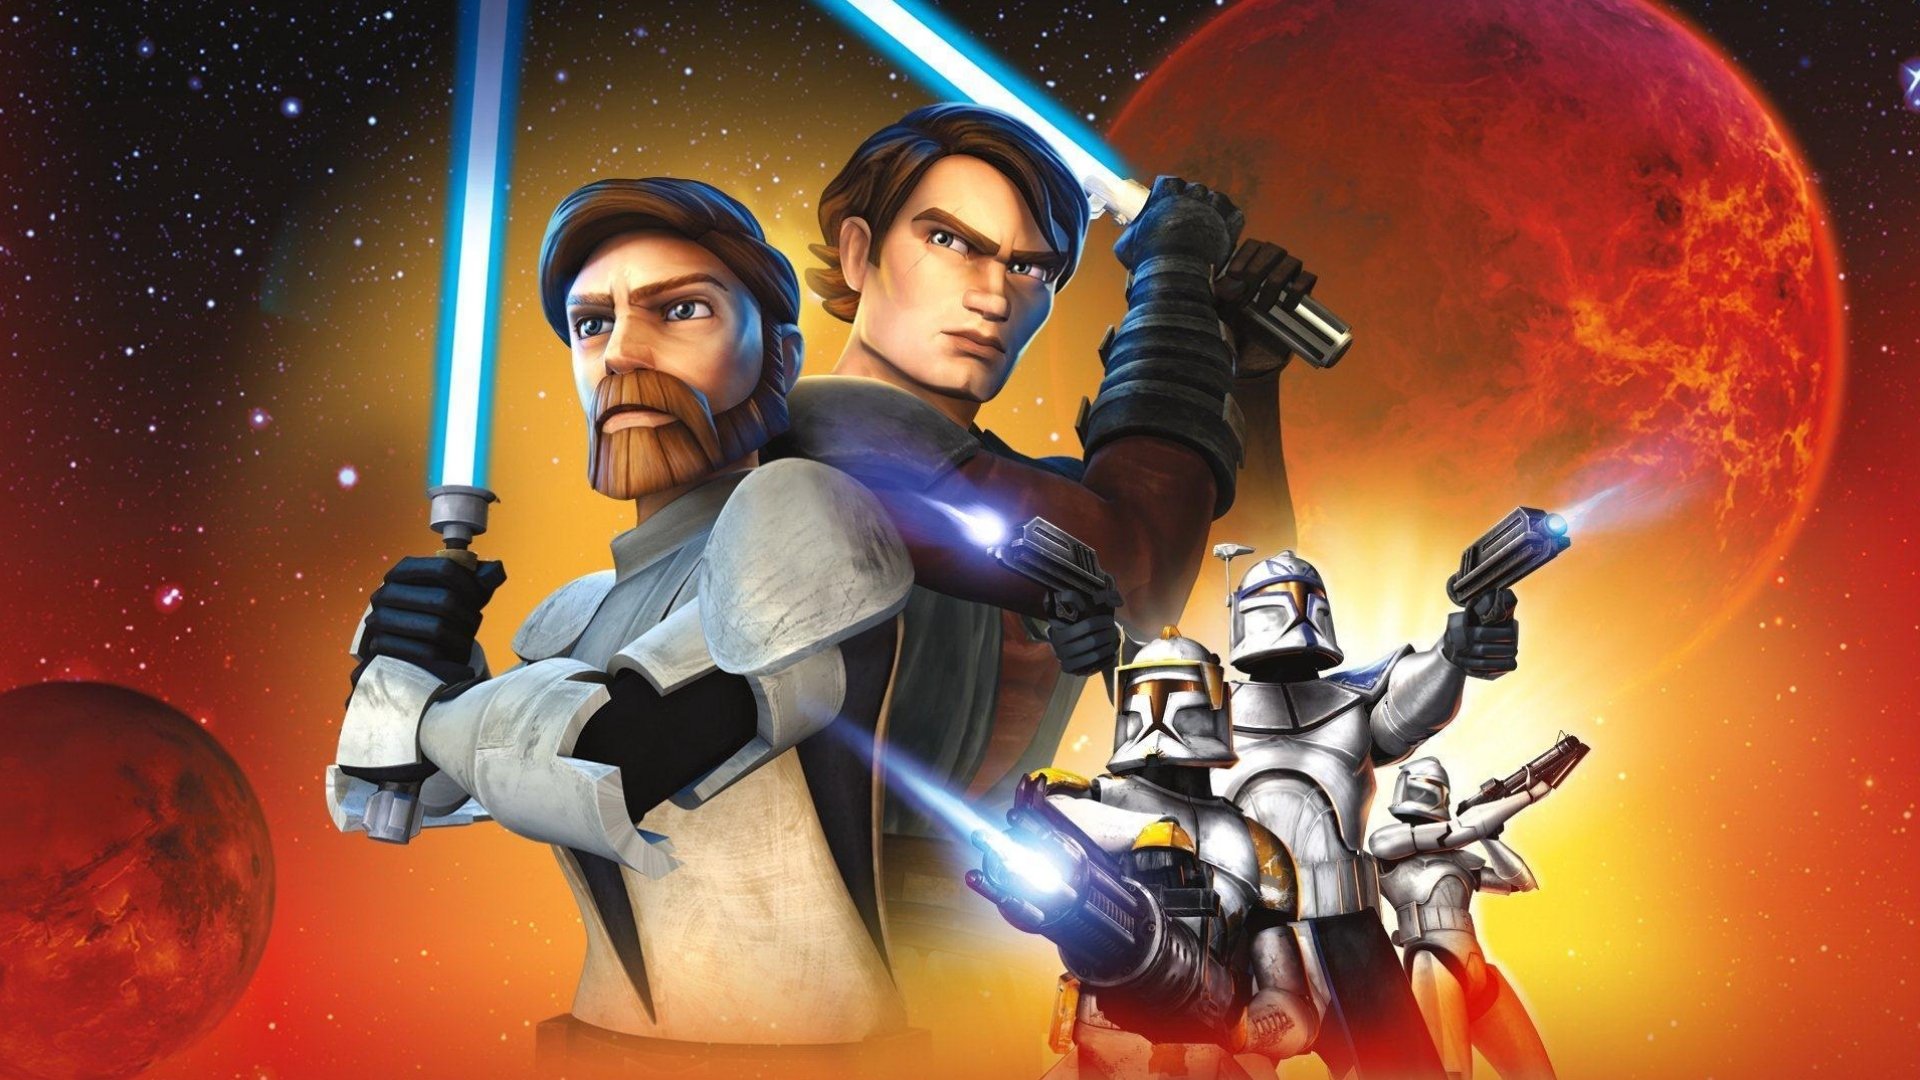 ვარსკვლავური ომები: კლონების ომი / Star Wars: The Clone Wars (Varskvlavuri Omebi: Klonebis Omi Qartulad) ქართულად